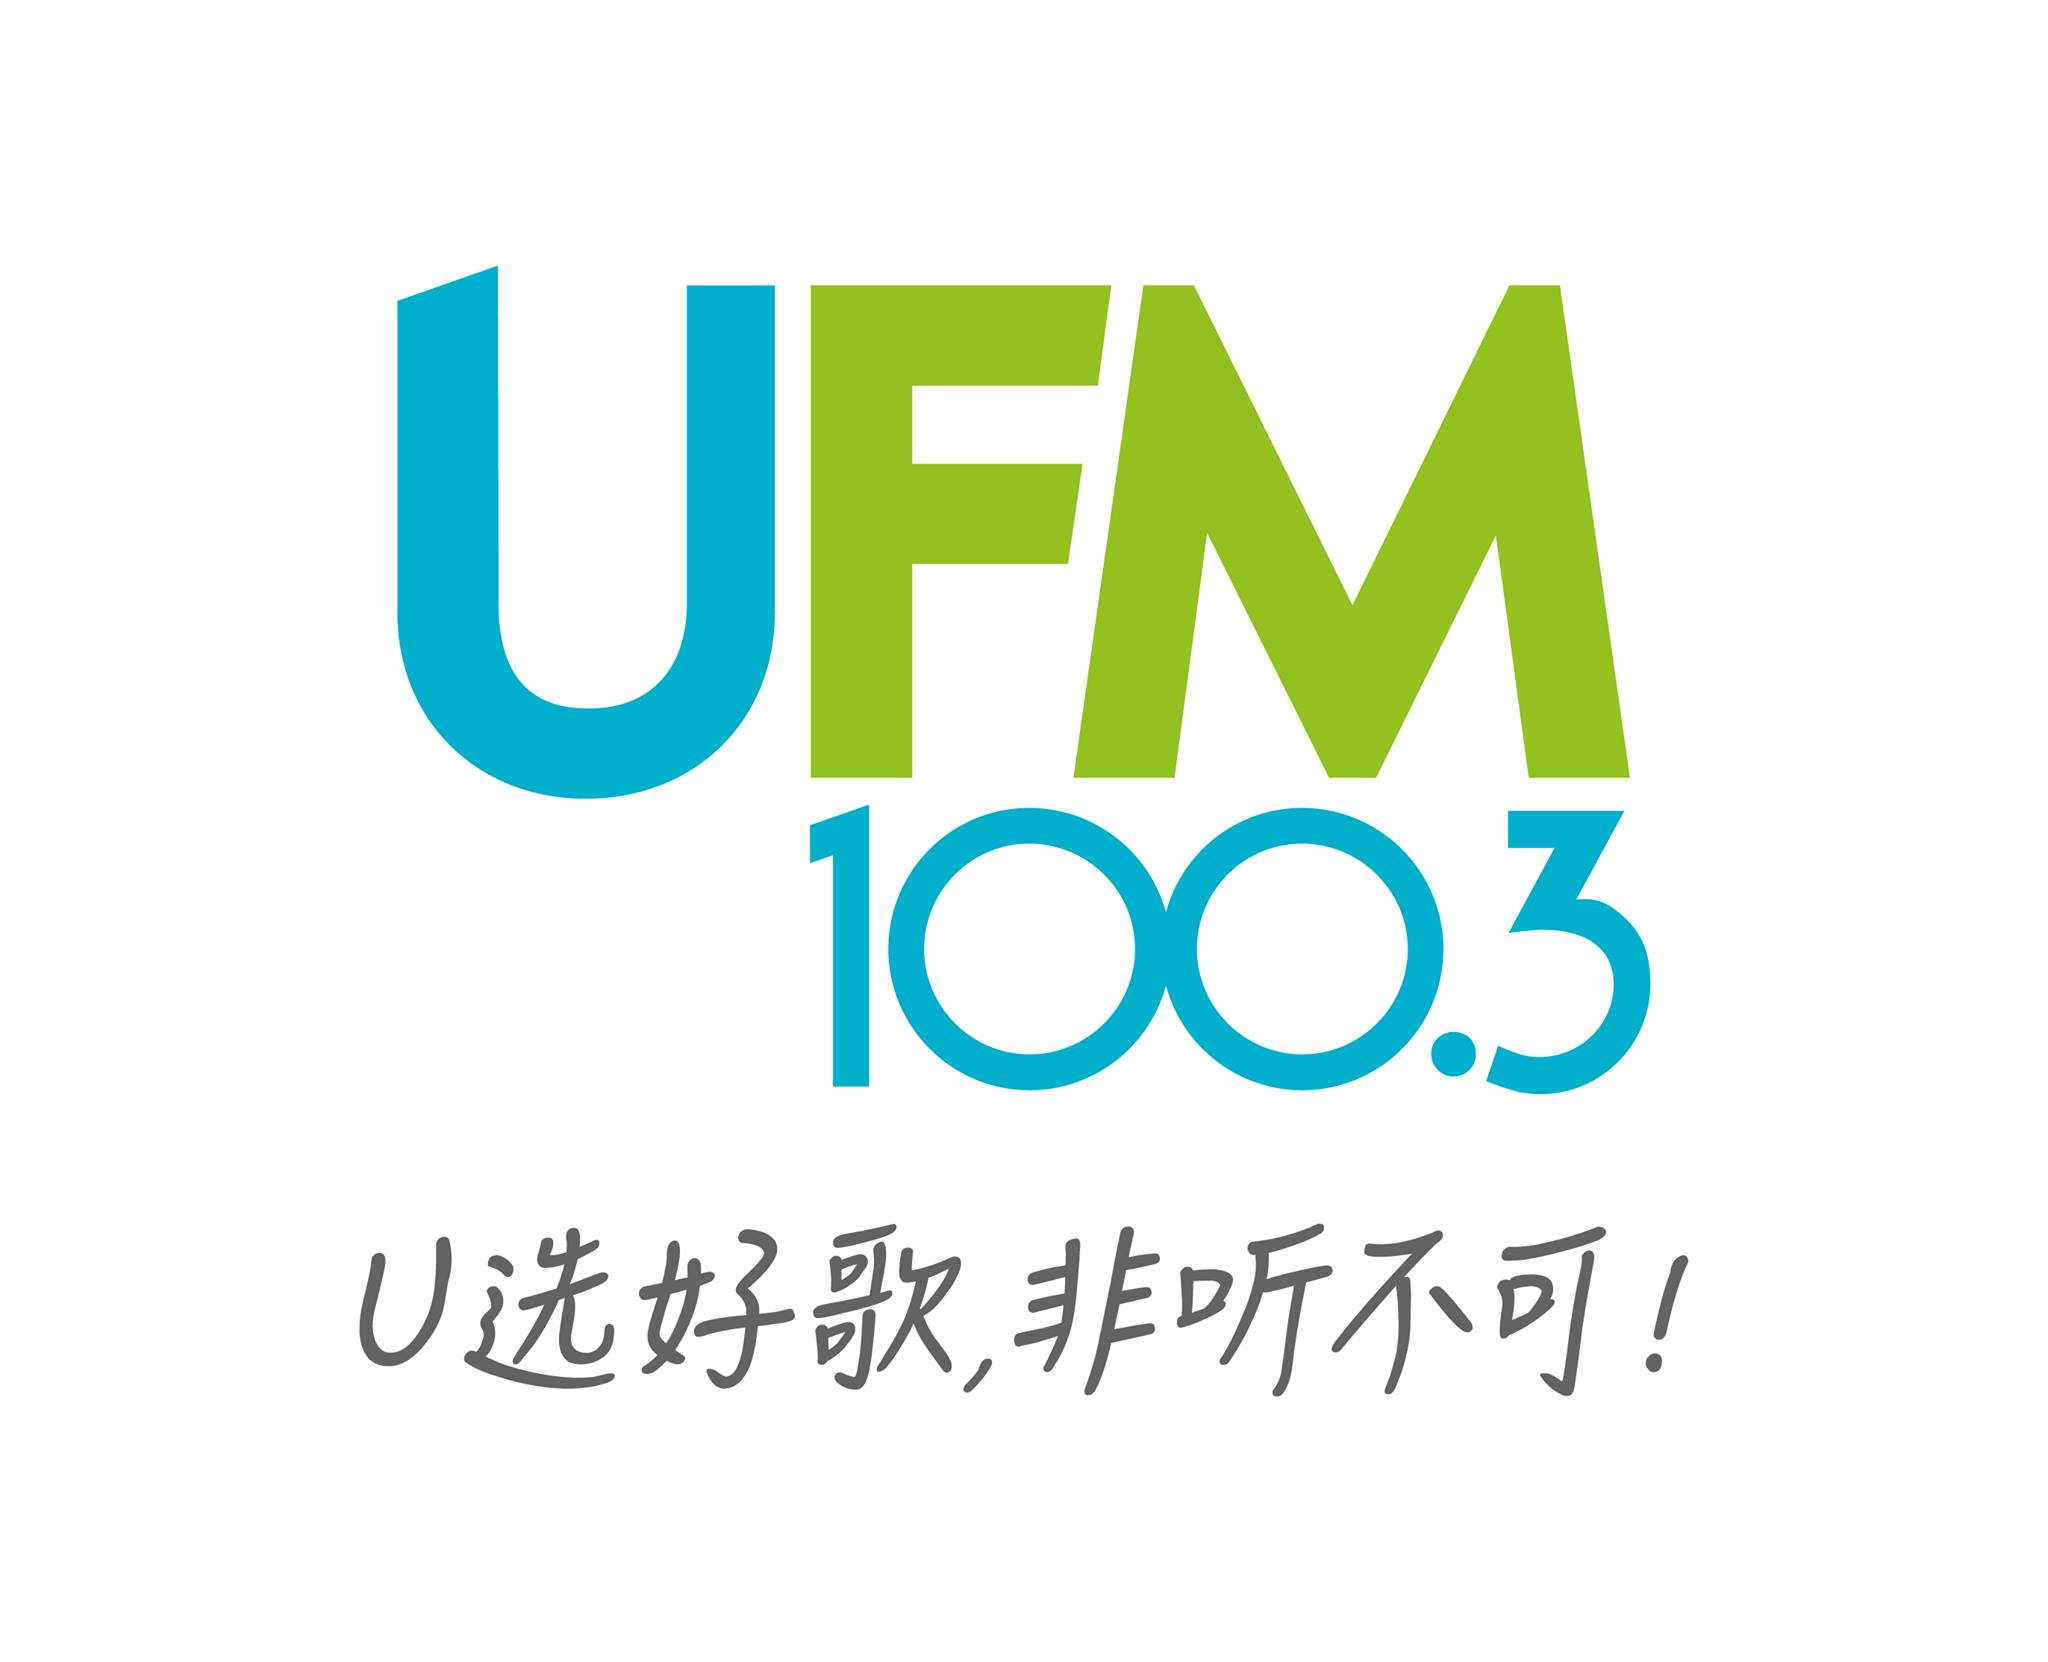 UFM100.3 DJ 大合唱 新年歌《贺新年》